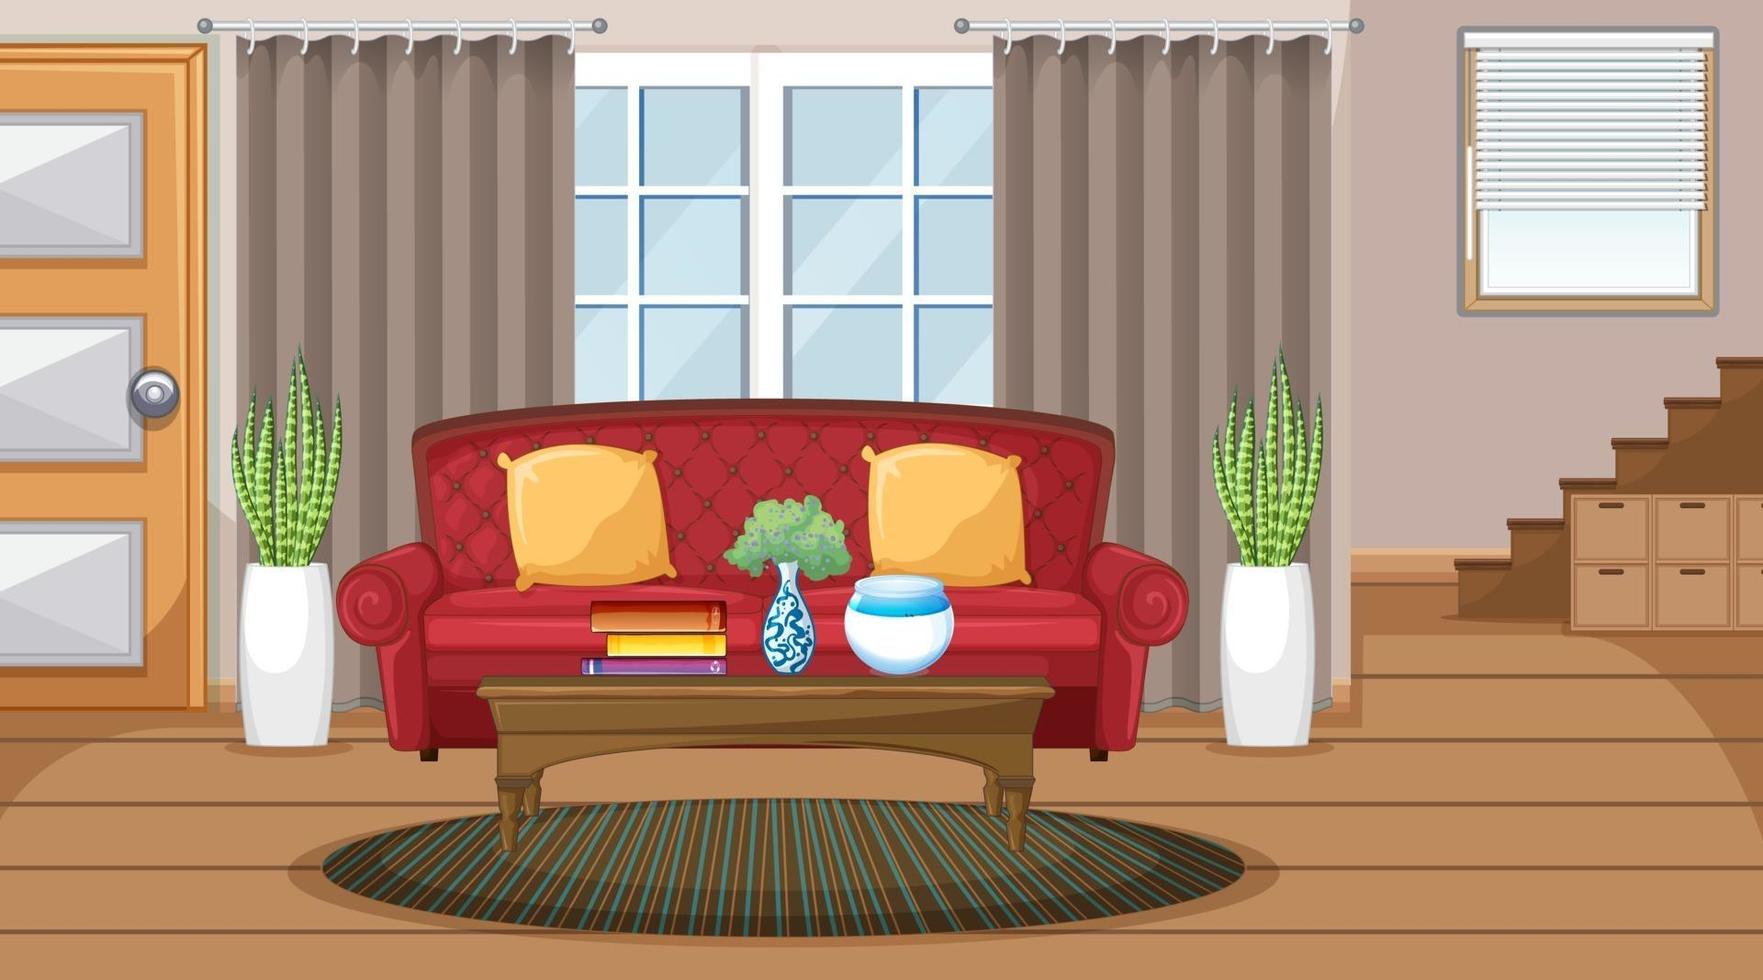 vardagsrum interiör scen med möbler och vardagsrum dekoration vektor